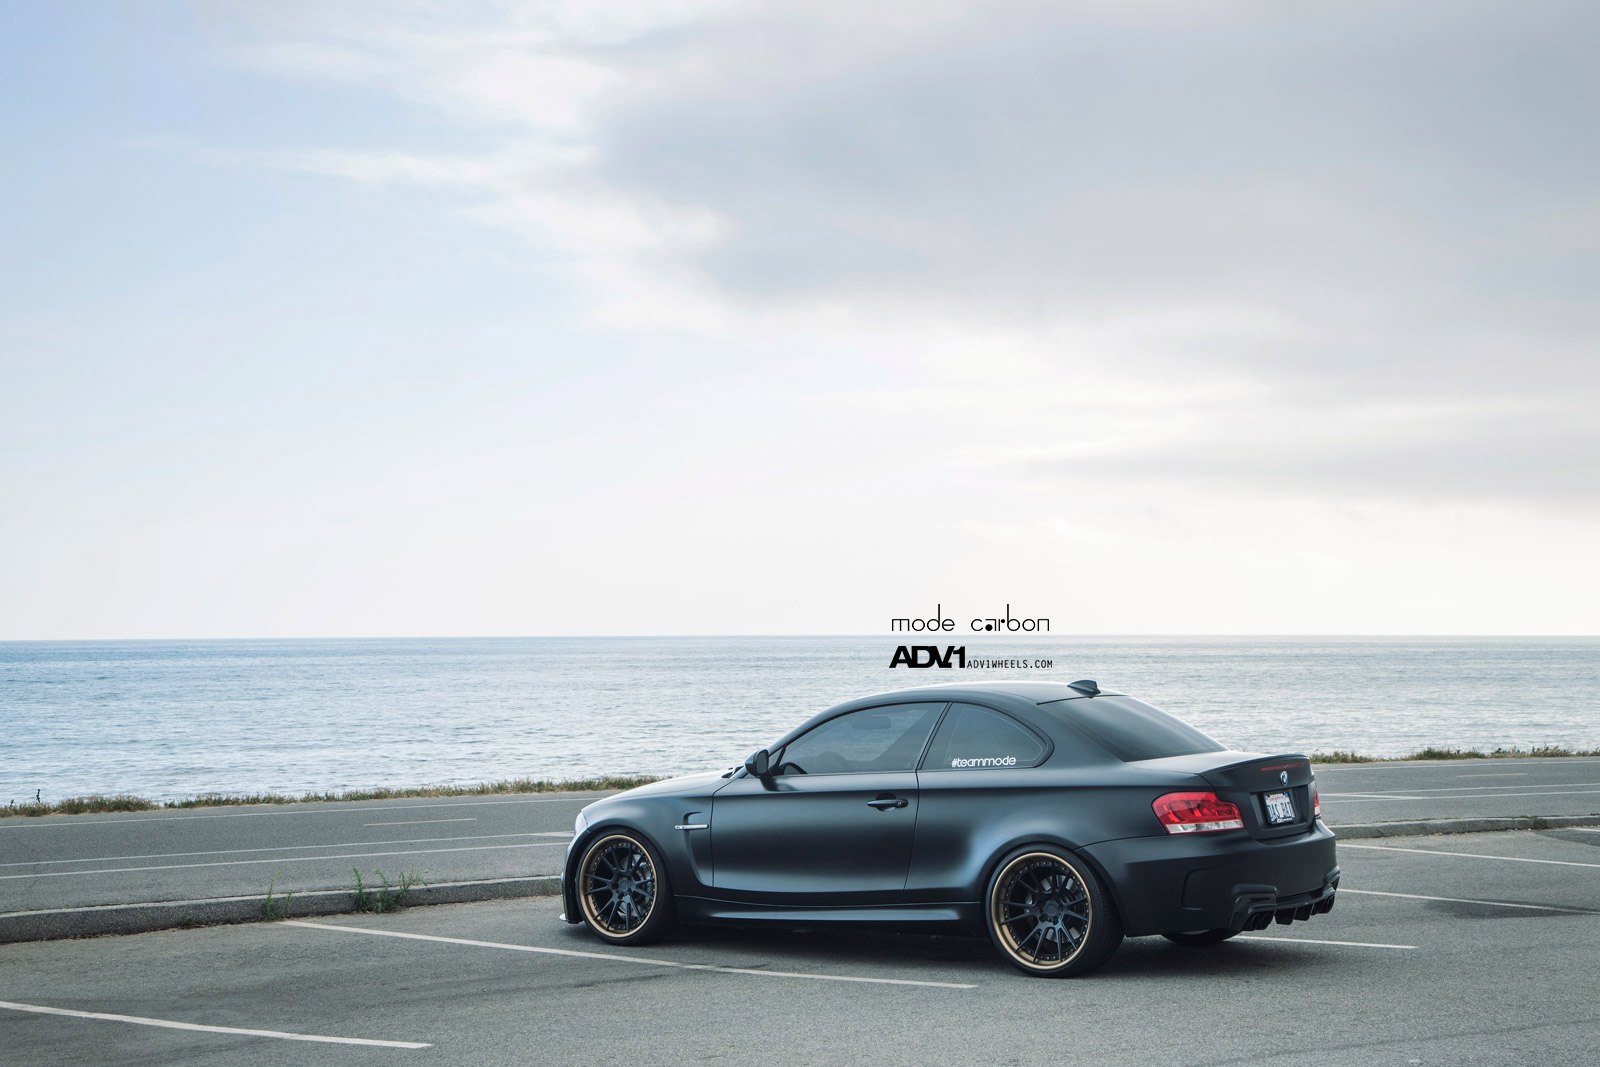 ADV1 Custom Rims on Black Matte BMW 1-Series - Photo by ADV.1